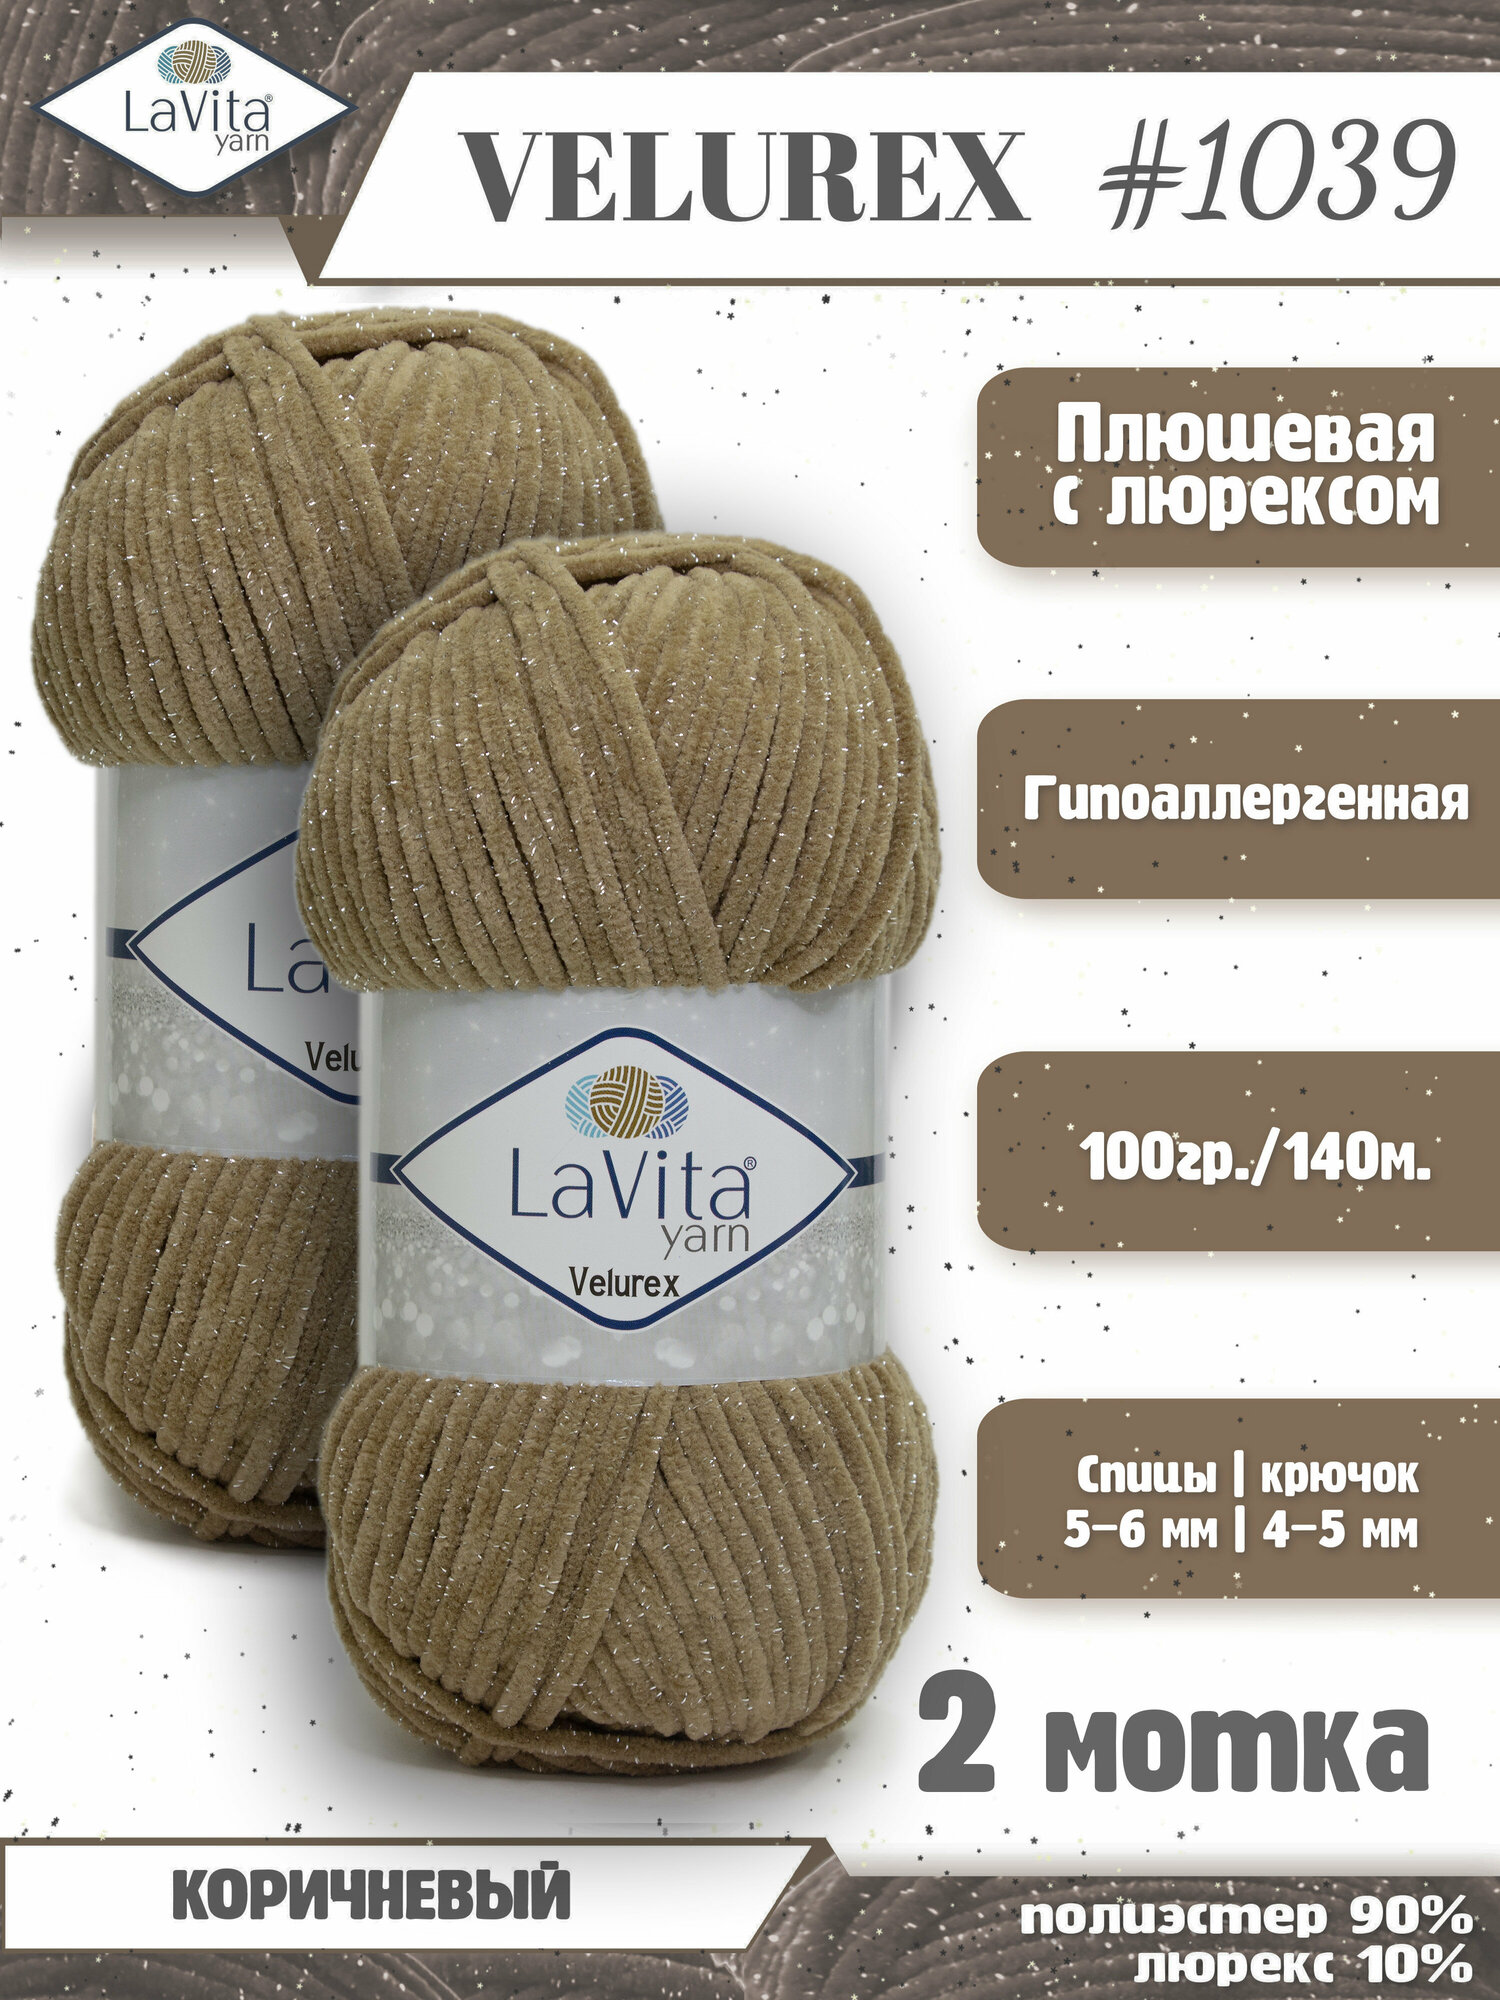 Плюшевая пряжа с люрексом LaVita "VELUREX-1039" (ЛаВита Велюрекс) коричневый, 100 г-140 м, полиэстер 90%, люрекс 10% - 2 мотка